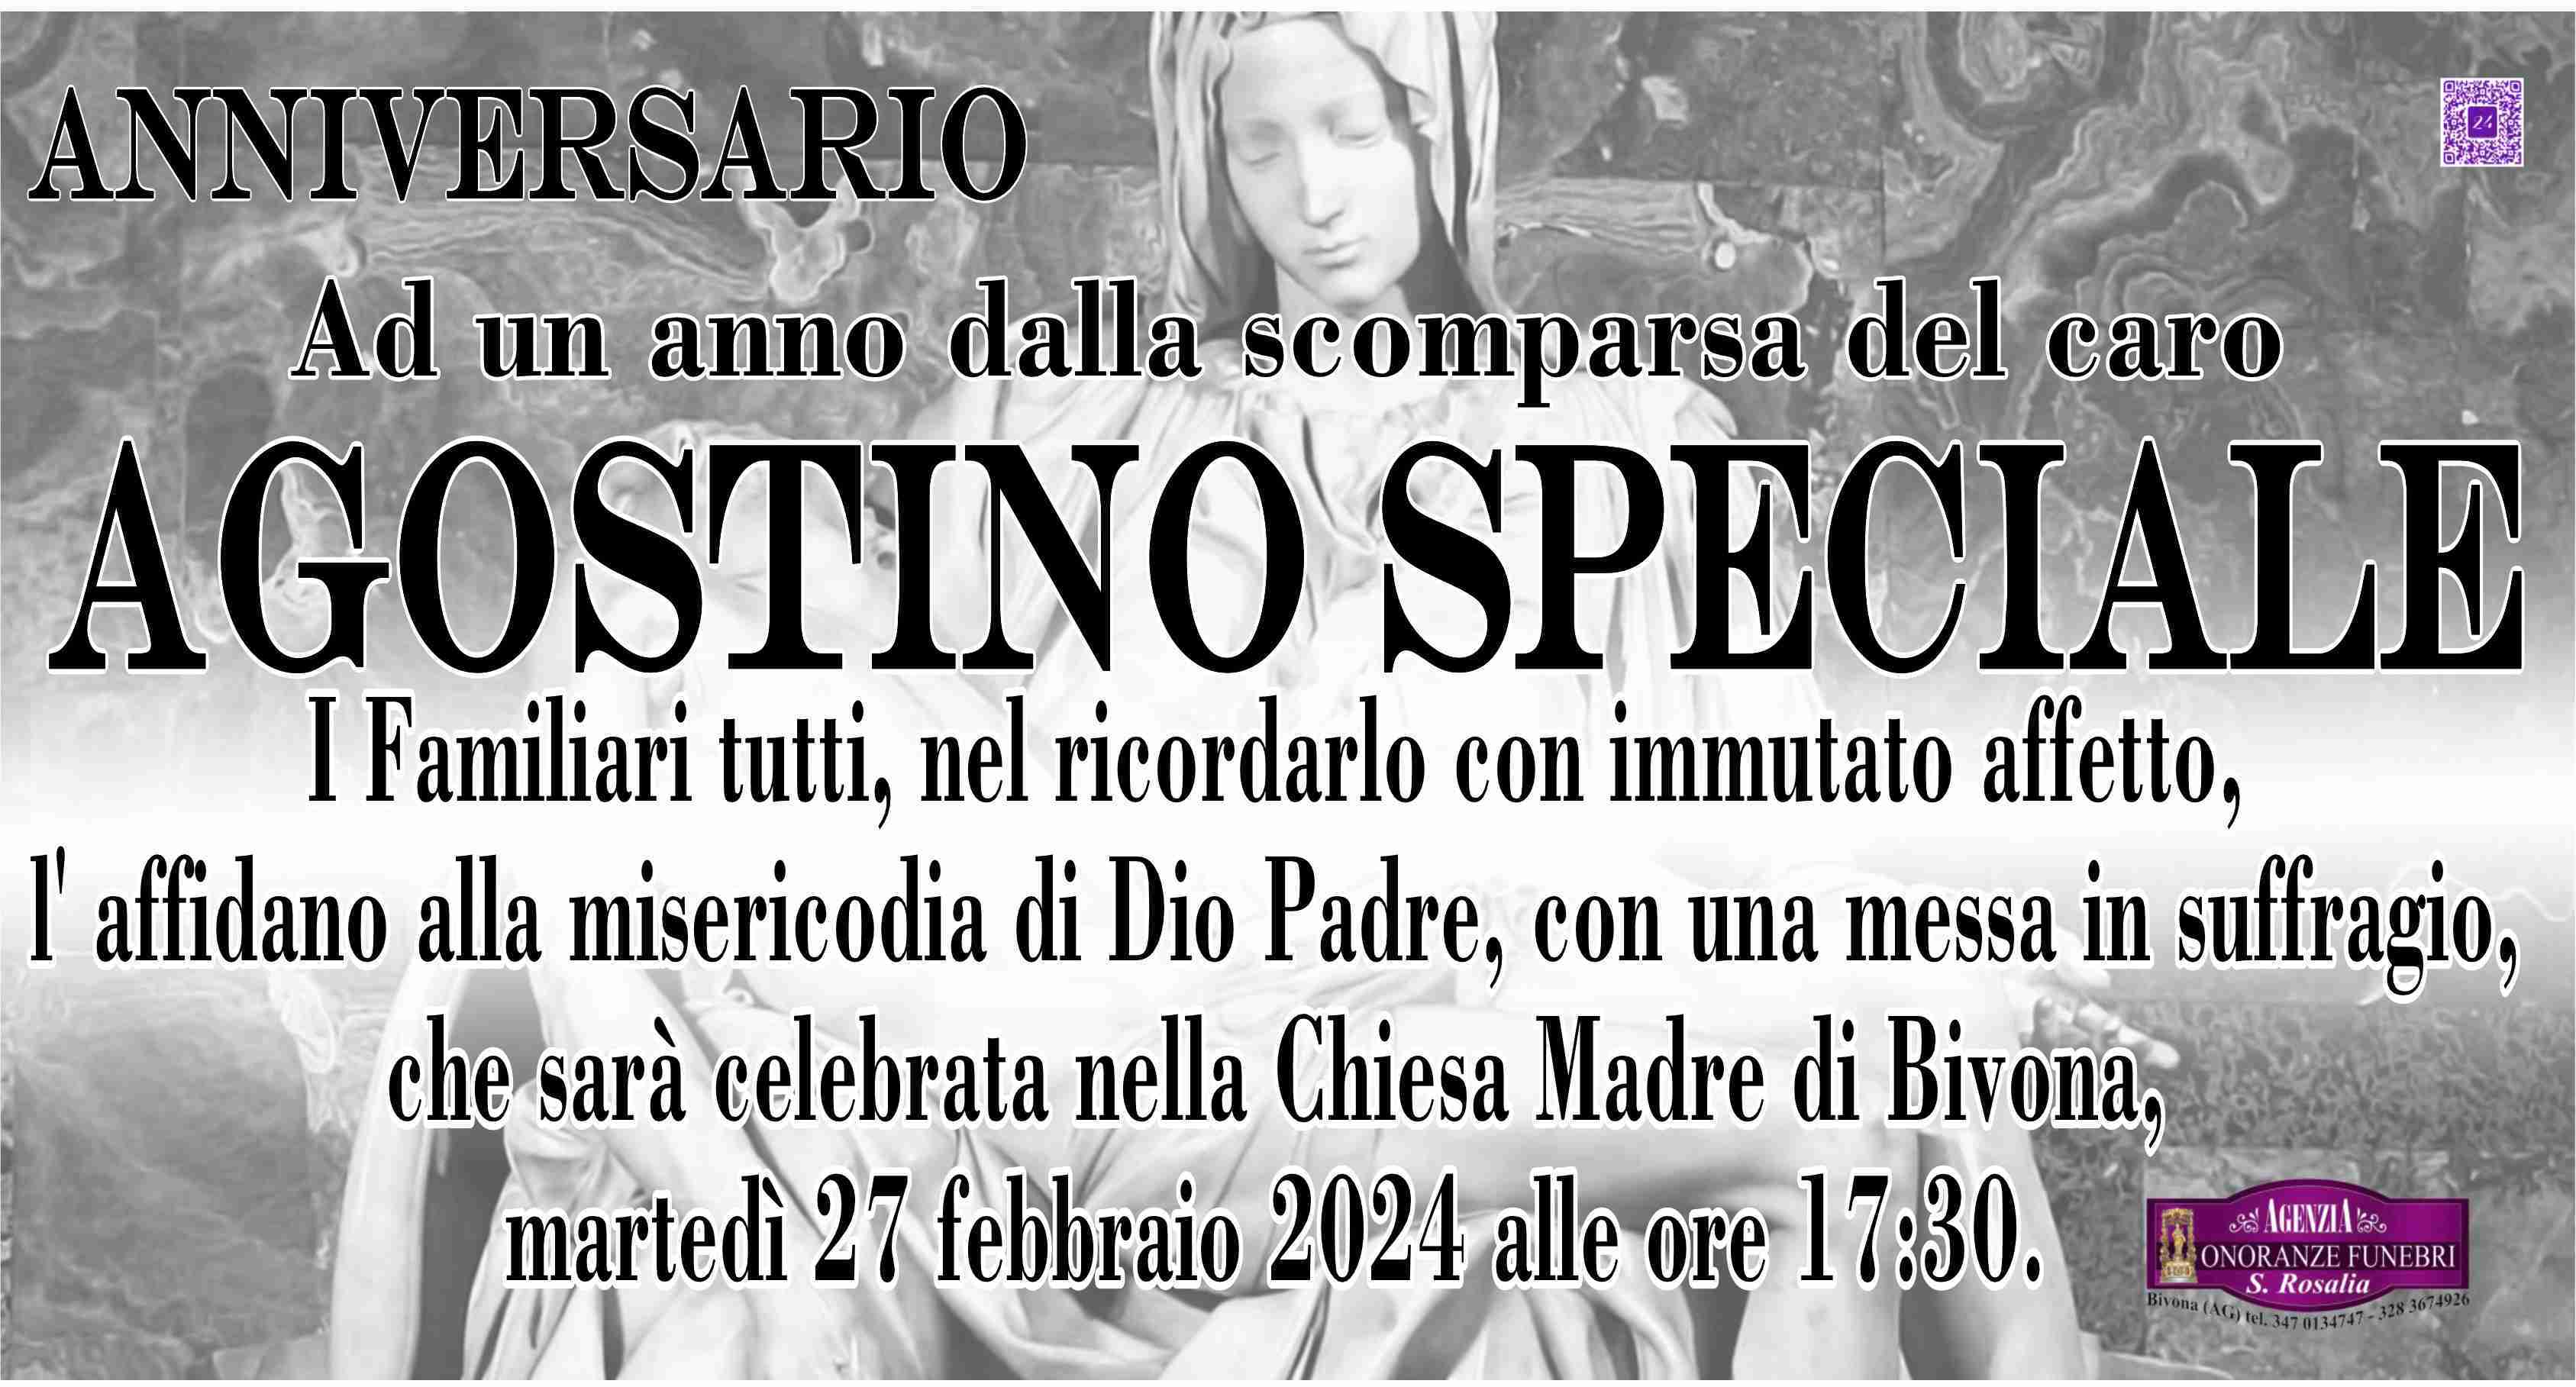 Agostino Speciale